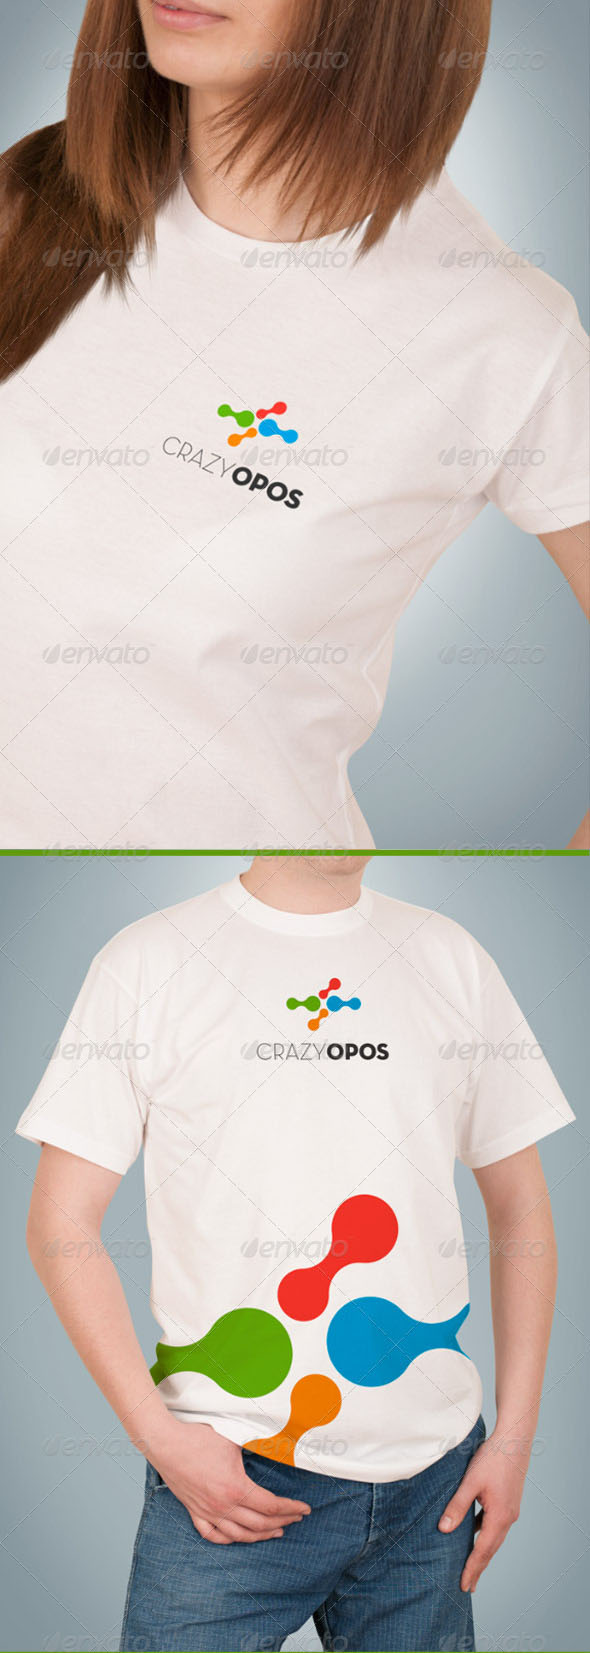 Realistic T-Shirt Mockup